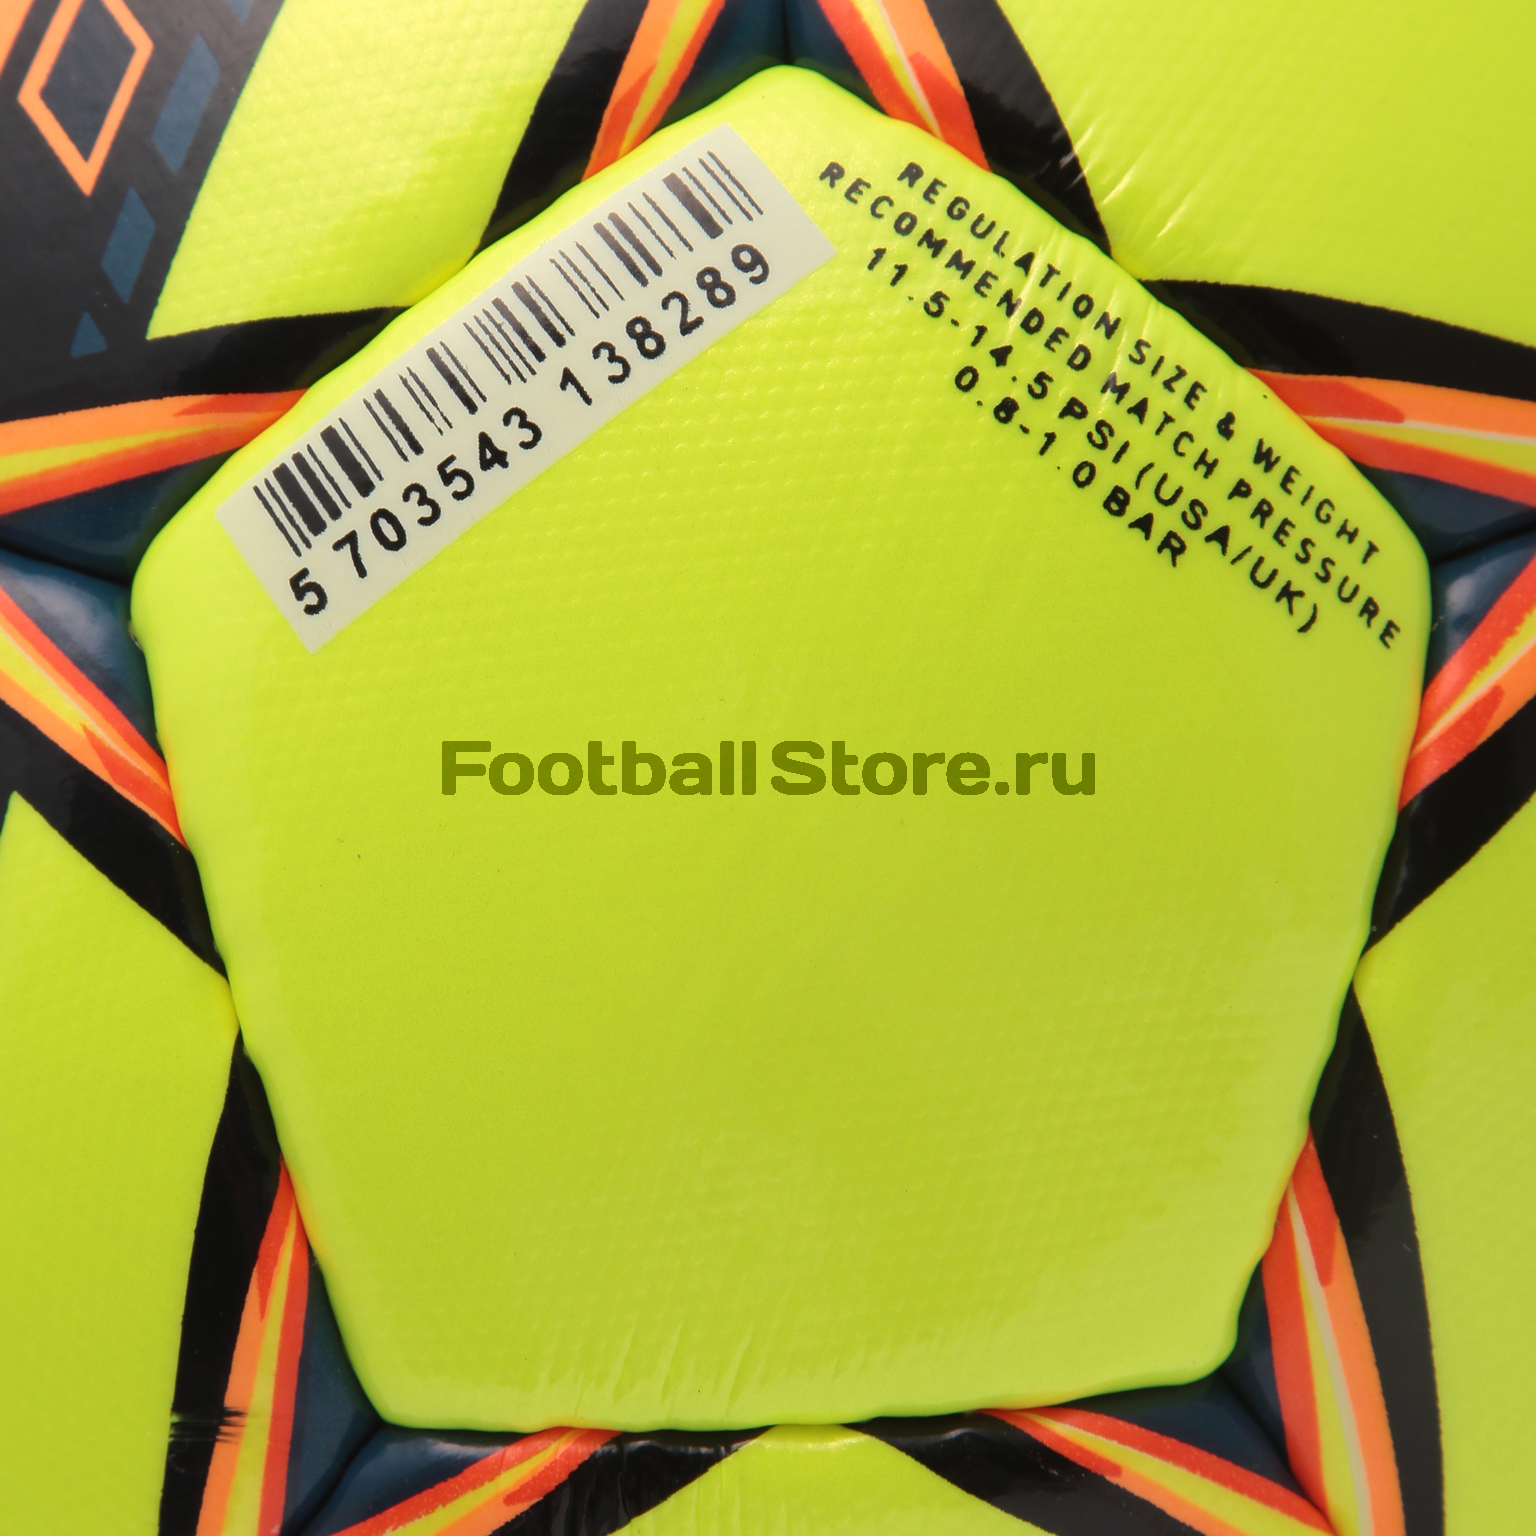 Футбольный мяч Select Brillant Super Fifa 810108-778